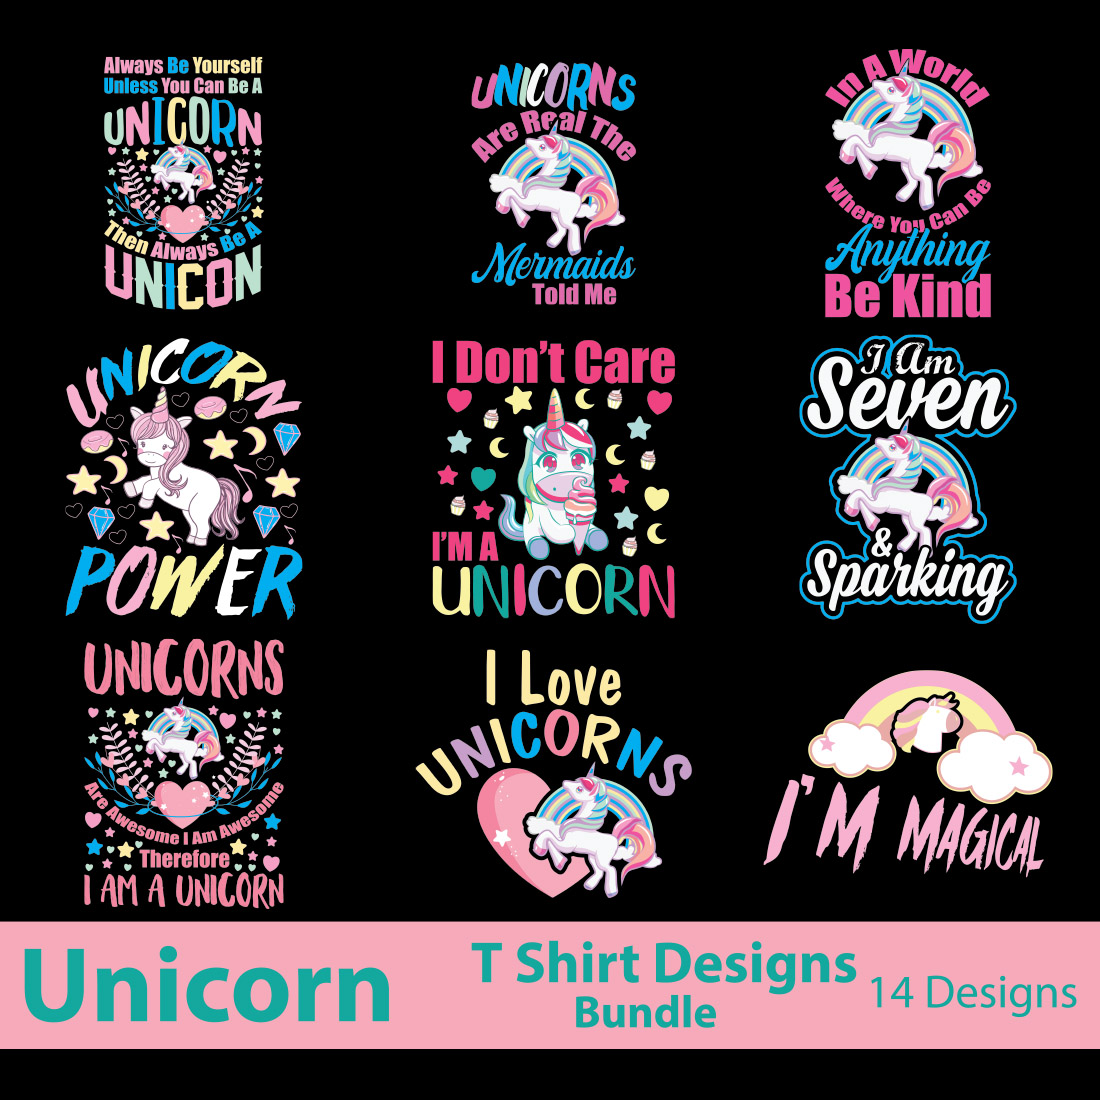 Unicorn T-Shirt Designs Bundle cover image.